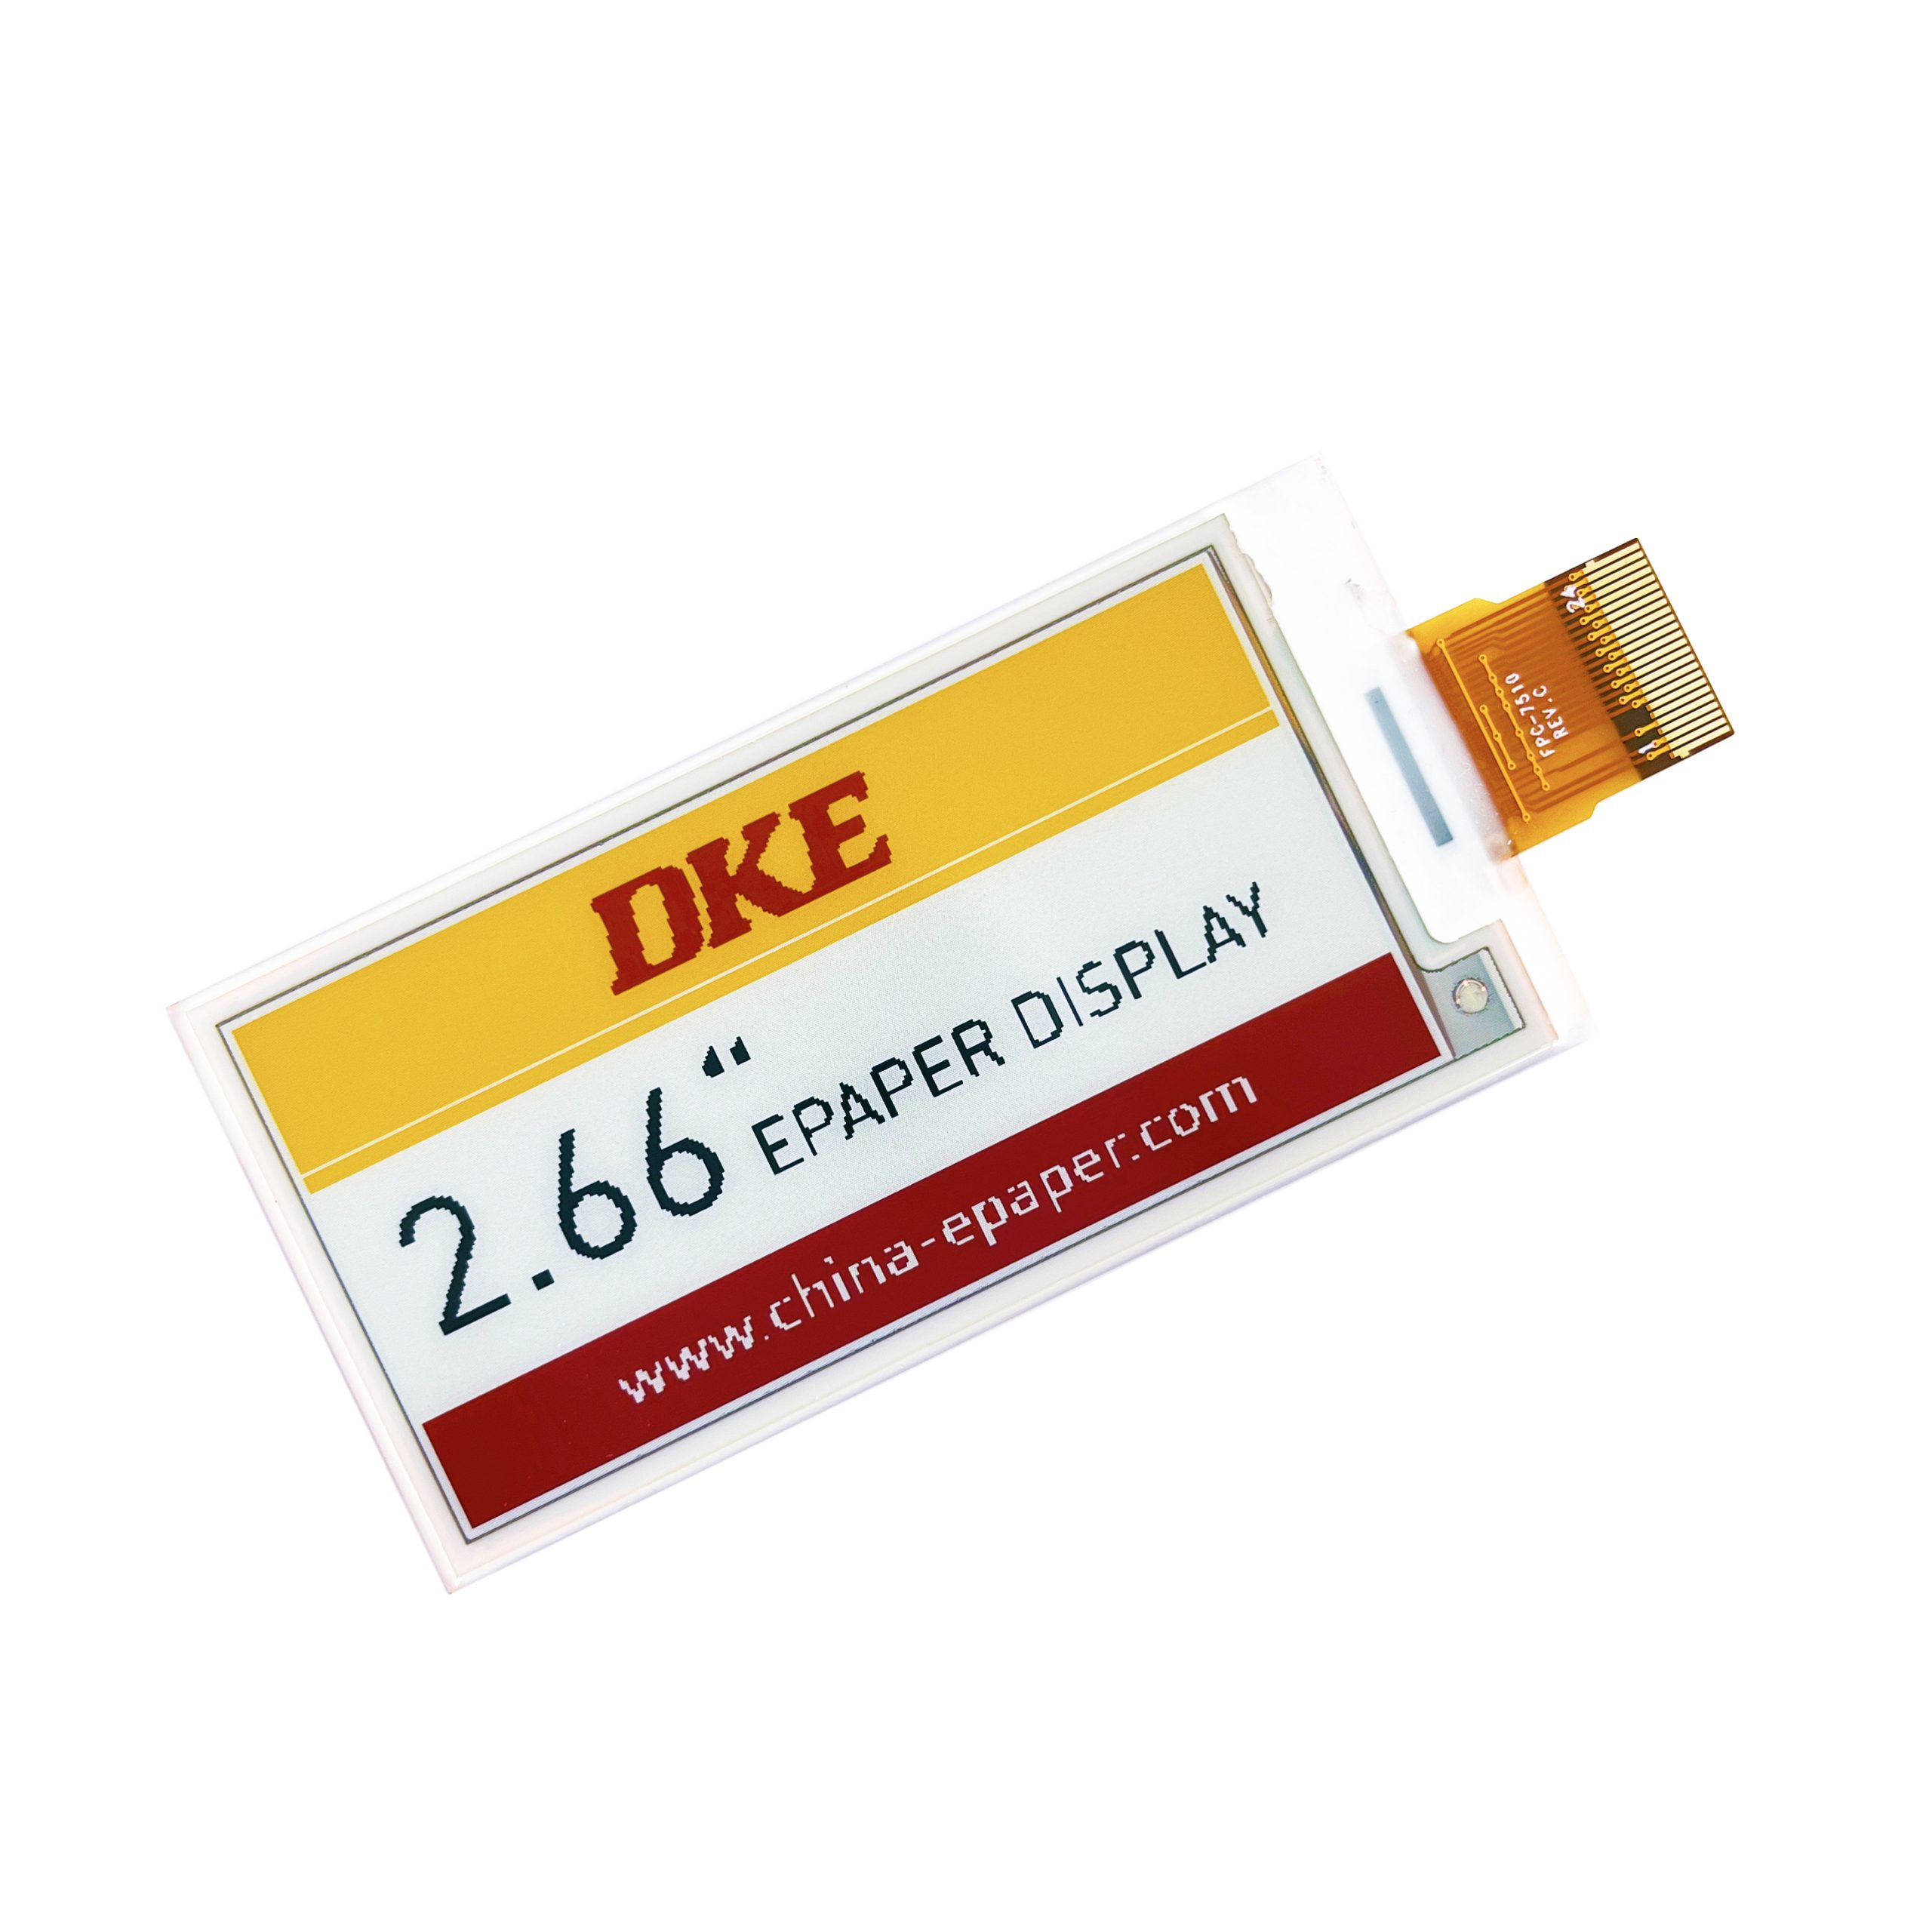 DKE 2.66 inch Epaper Display-E5